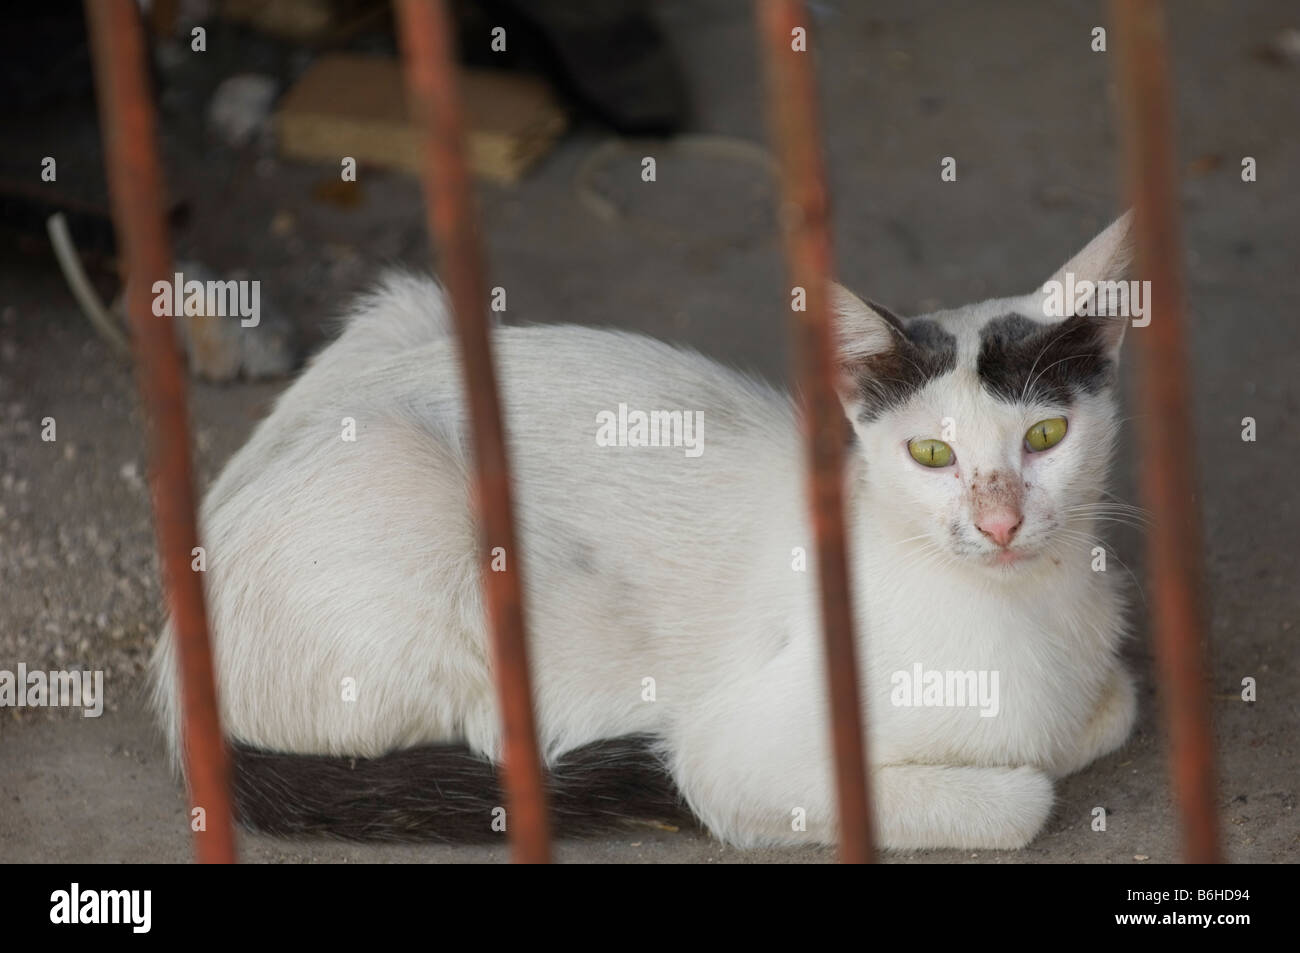 White street cat behind bars Stock Photo